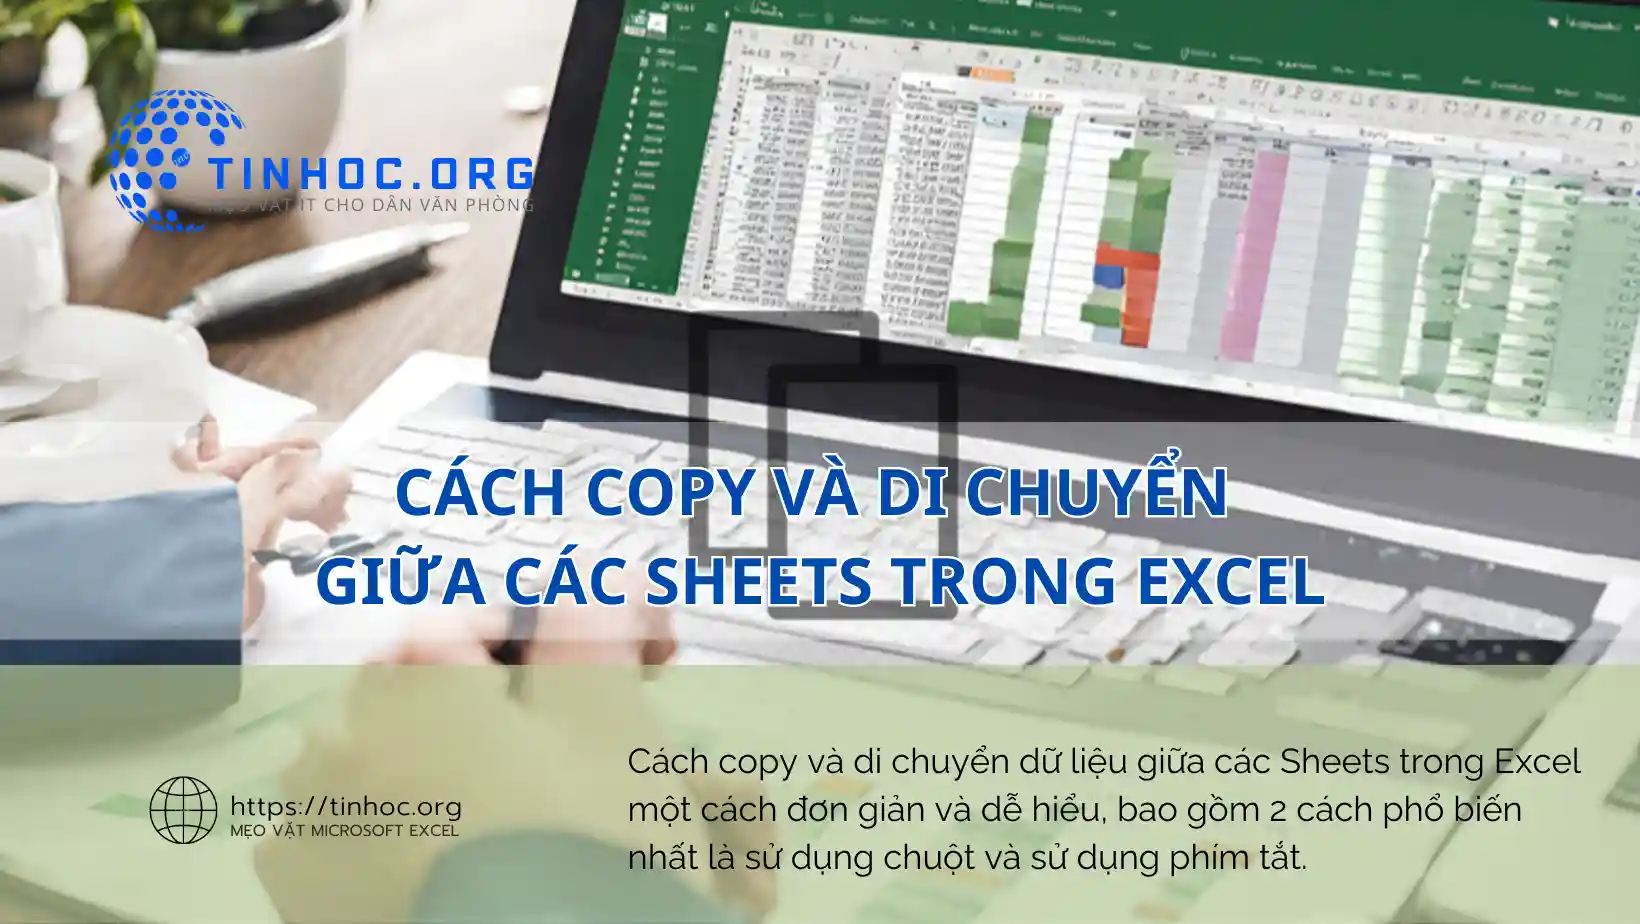 Cách copy và di chuyển dữ liệu giữa các Sheets trong Excel một cách đơn giản và dễ hiểu, bao gồm 2 cách phổ biến nhất là sử dụng chuột và sử dụng phím tắt.